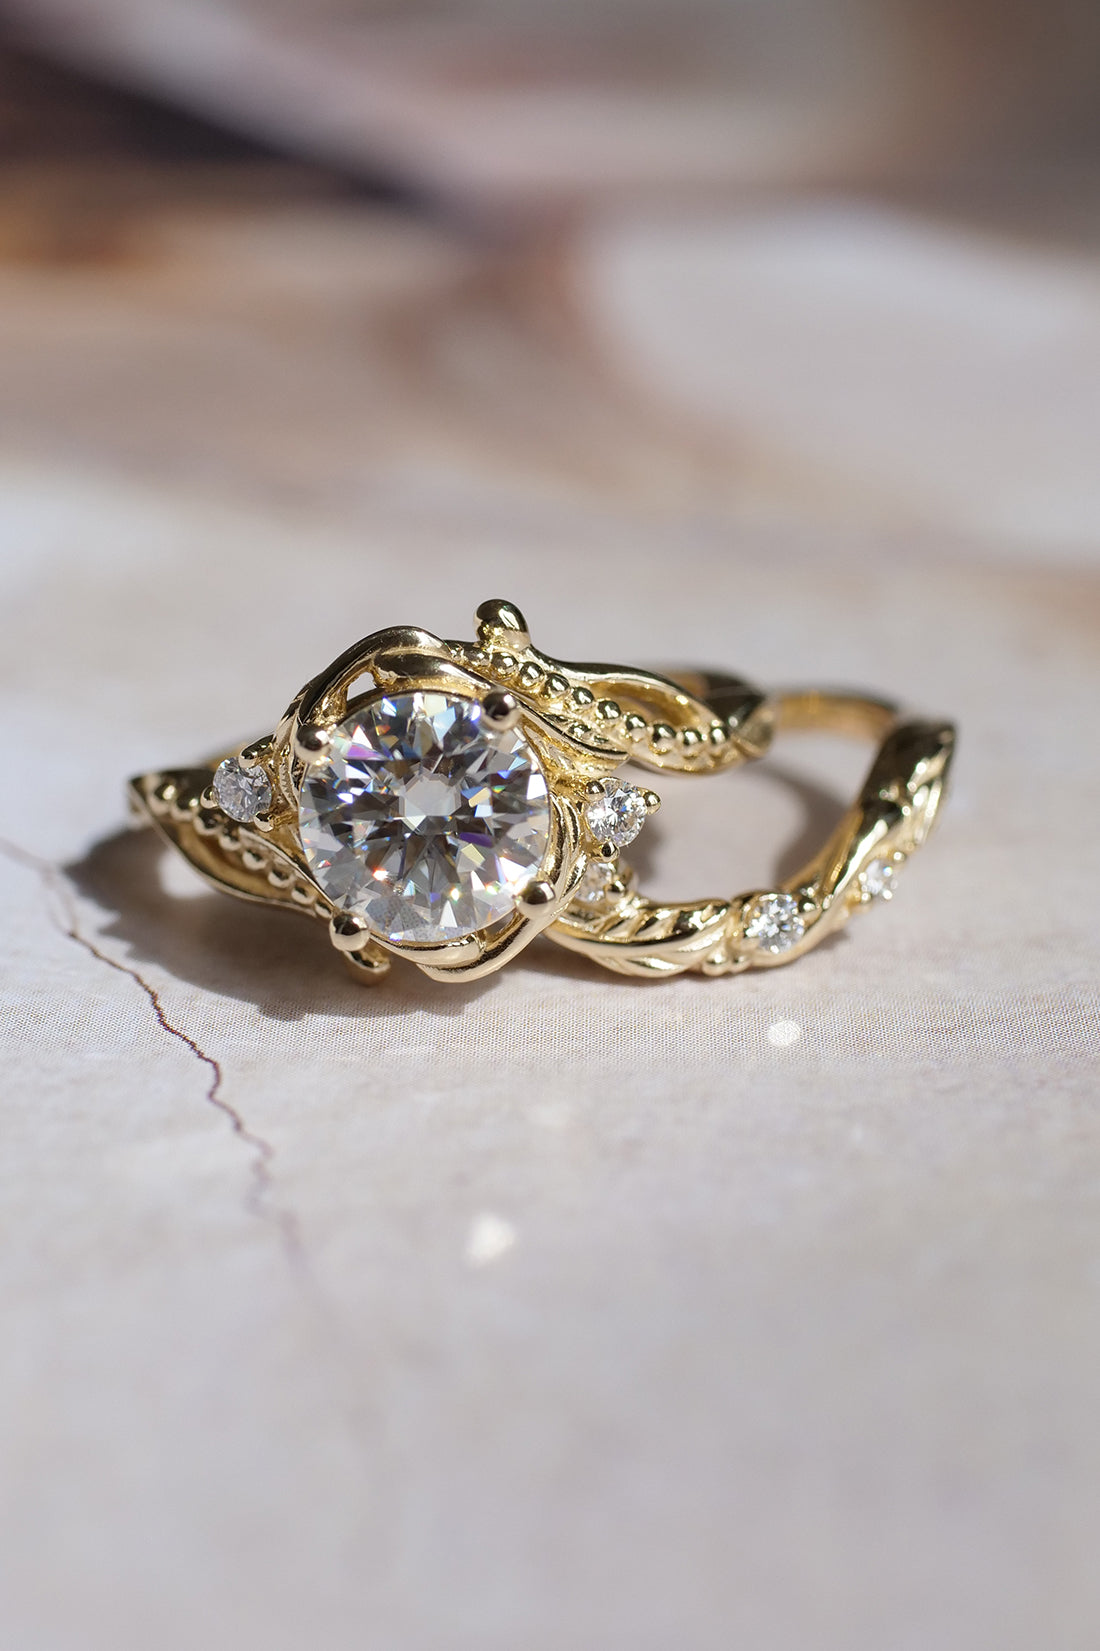 Moissanite engagement ring, 1.5 ct round cut gemstone / Undina - Eden Garden Jewelry™